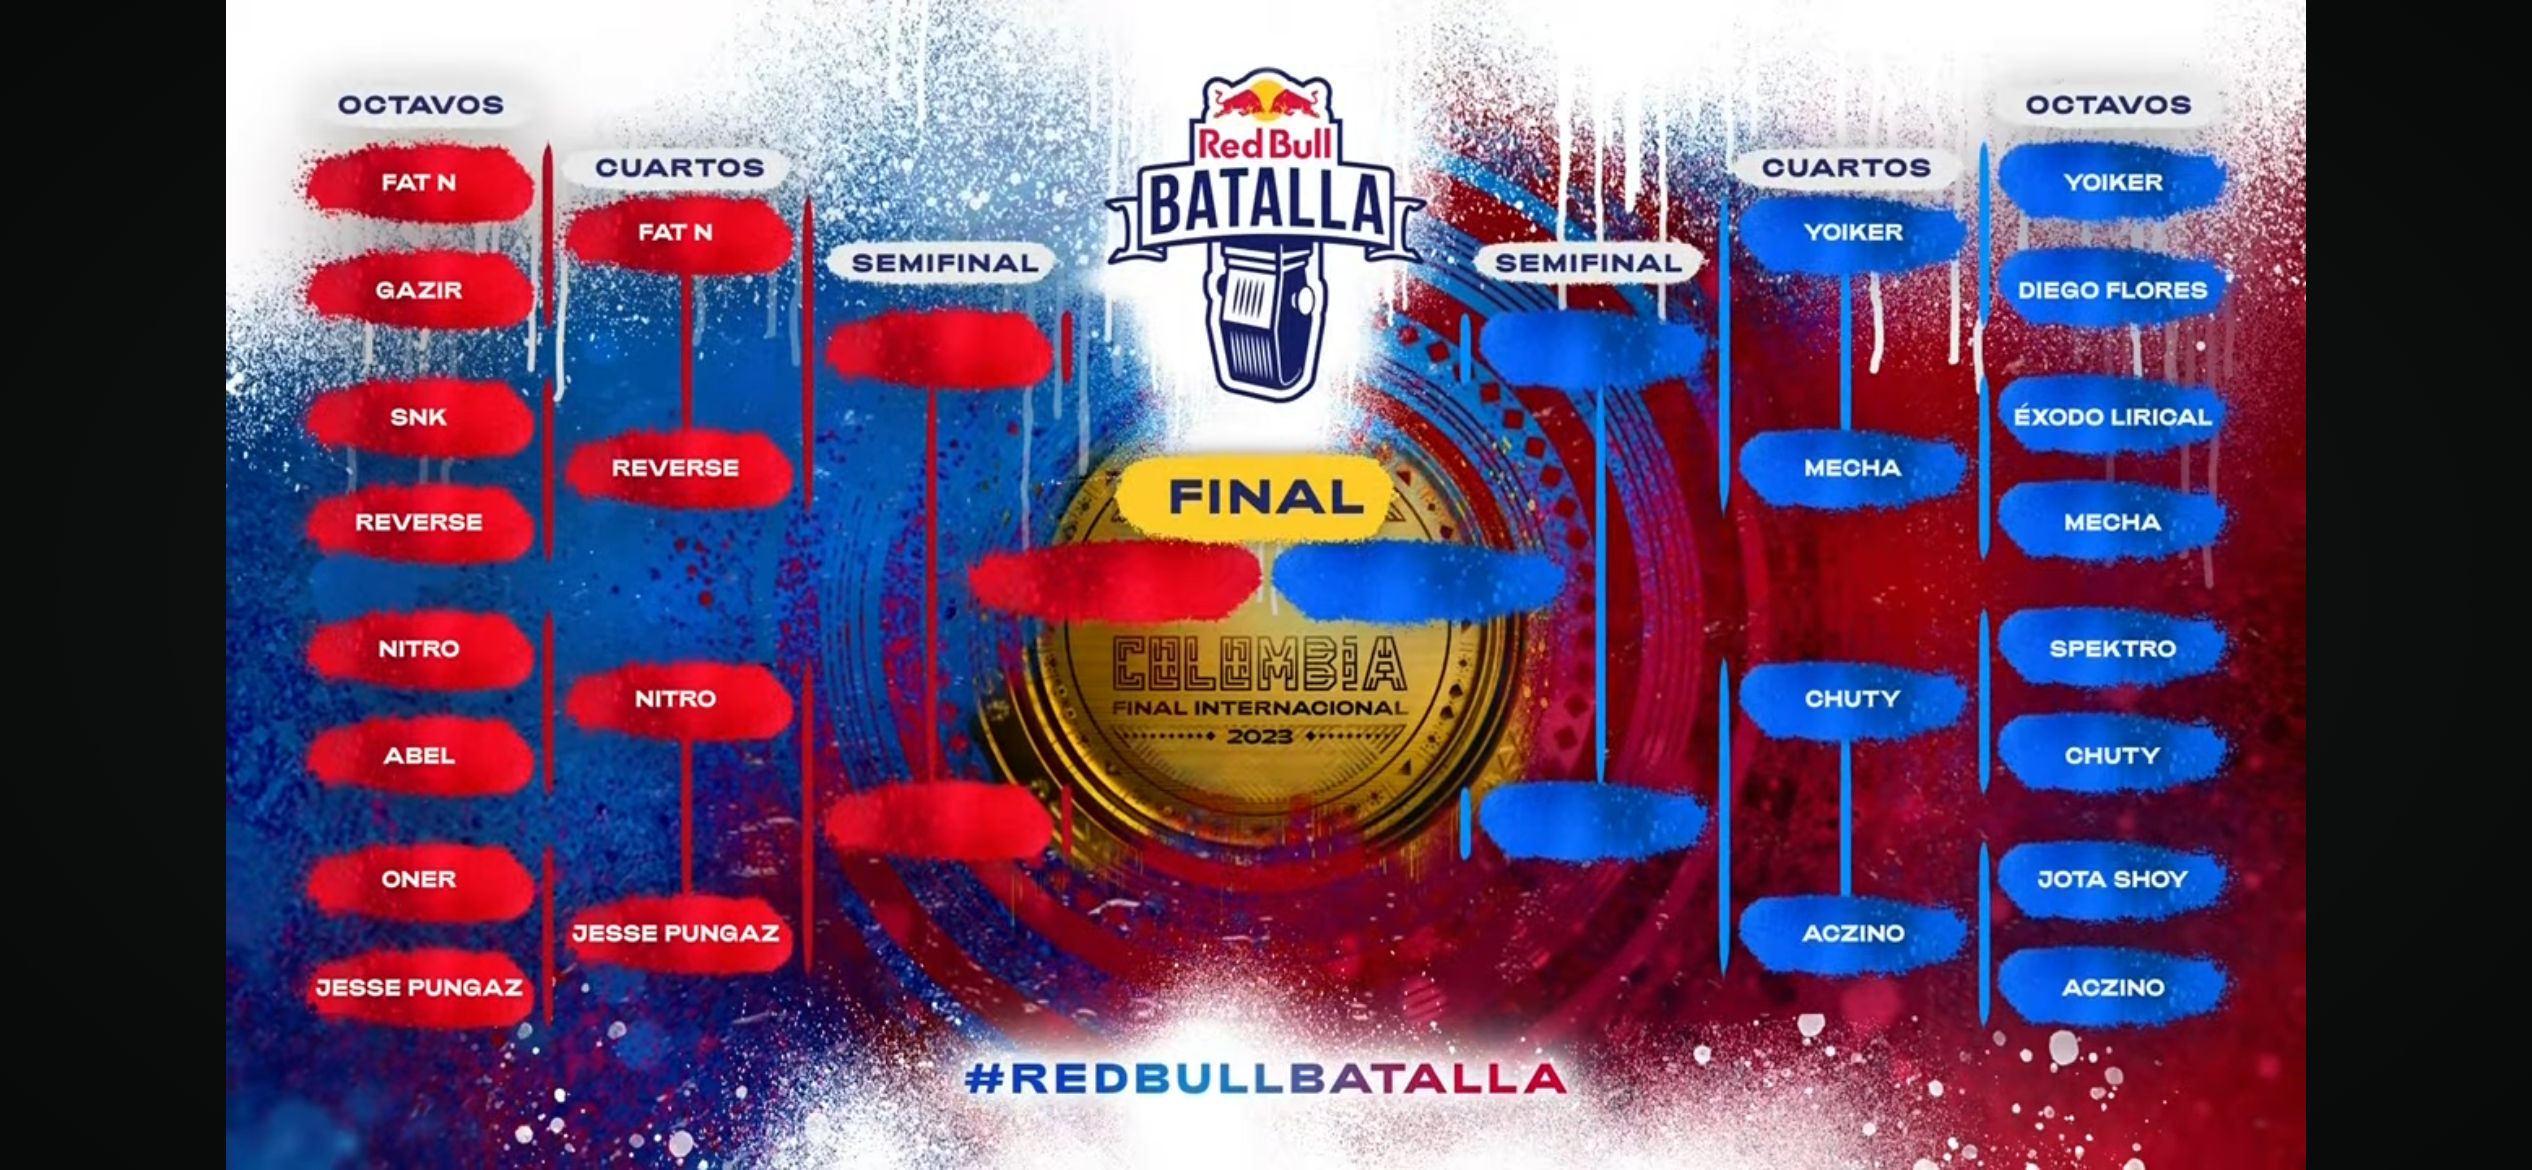 Los cuartos de final de Red Bull Batalla Internacional 2023